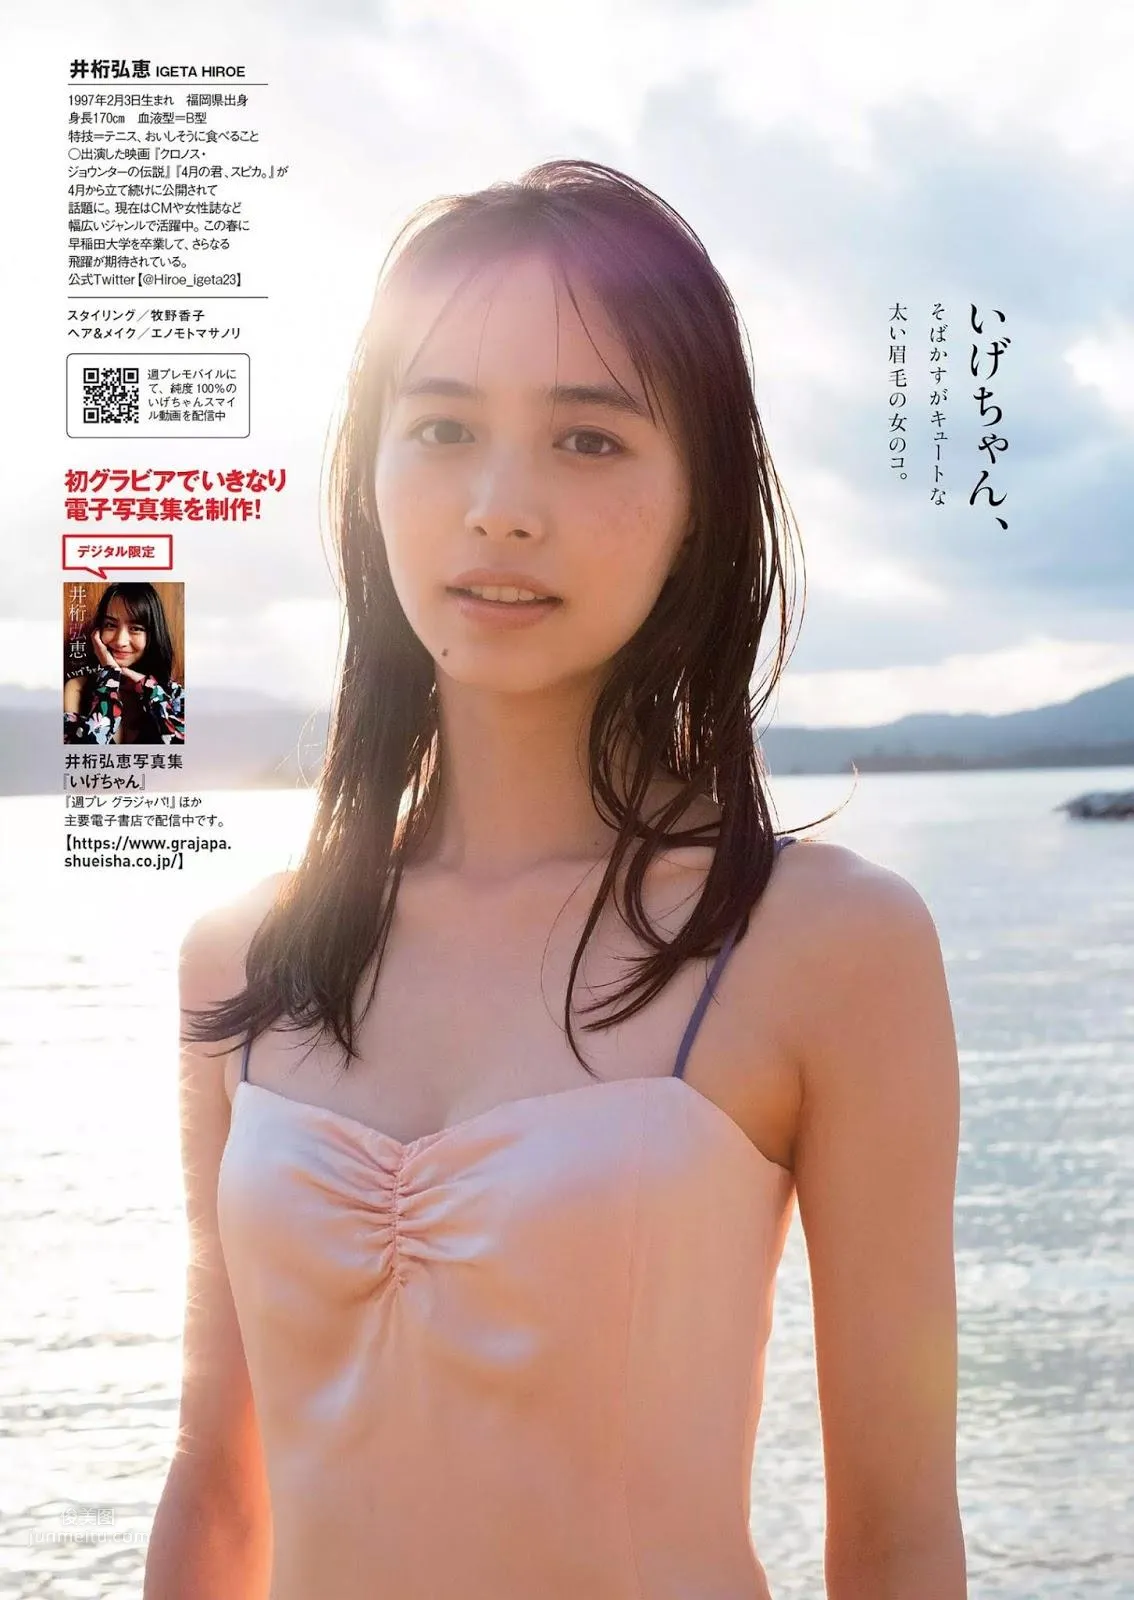 井桁弘恵, Igeta Hiroe - Weekly Playboy, Young Jump, 2019_14